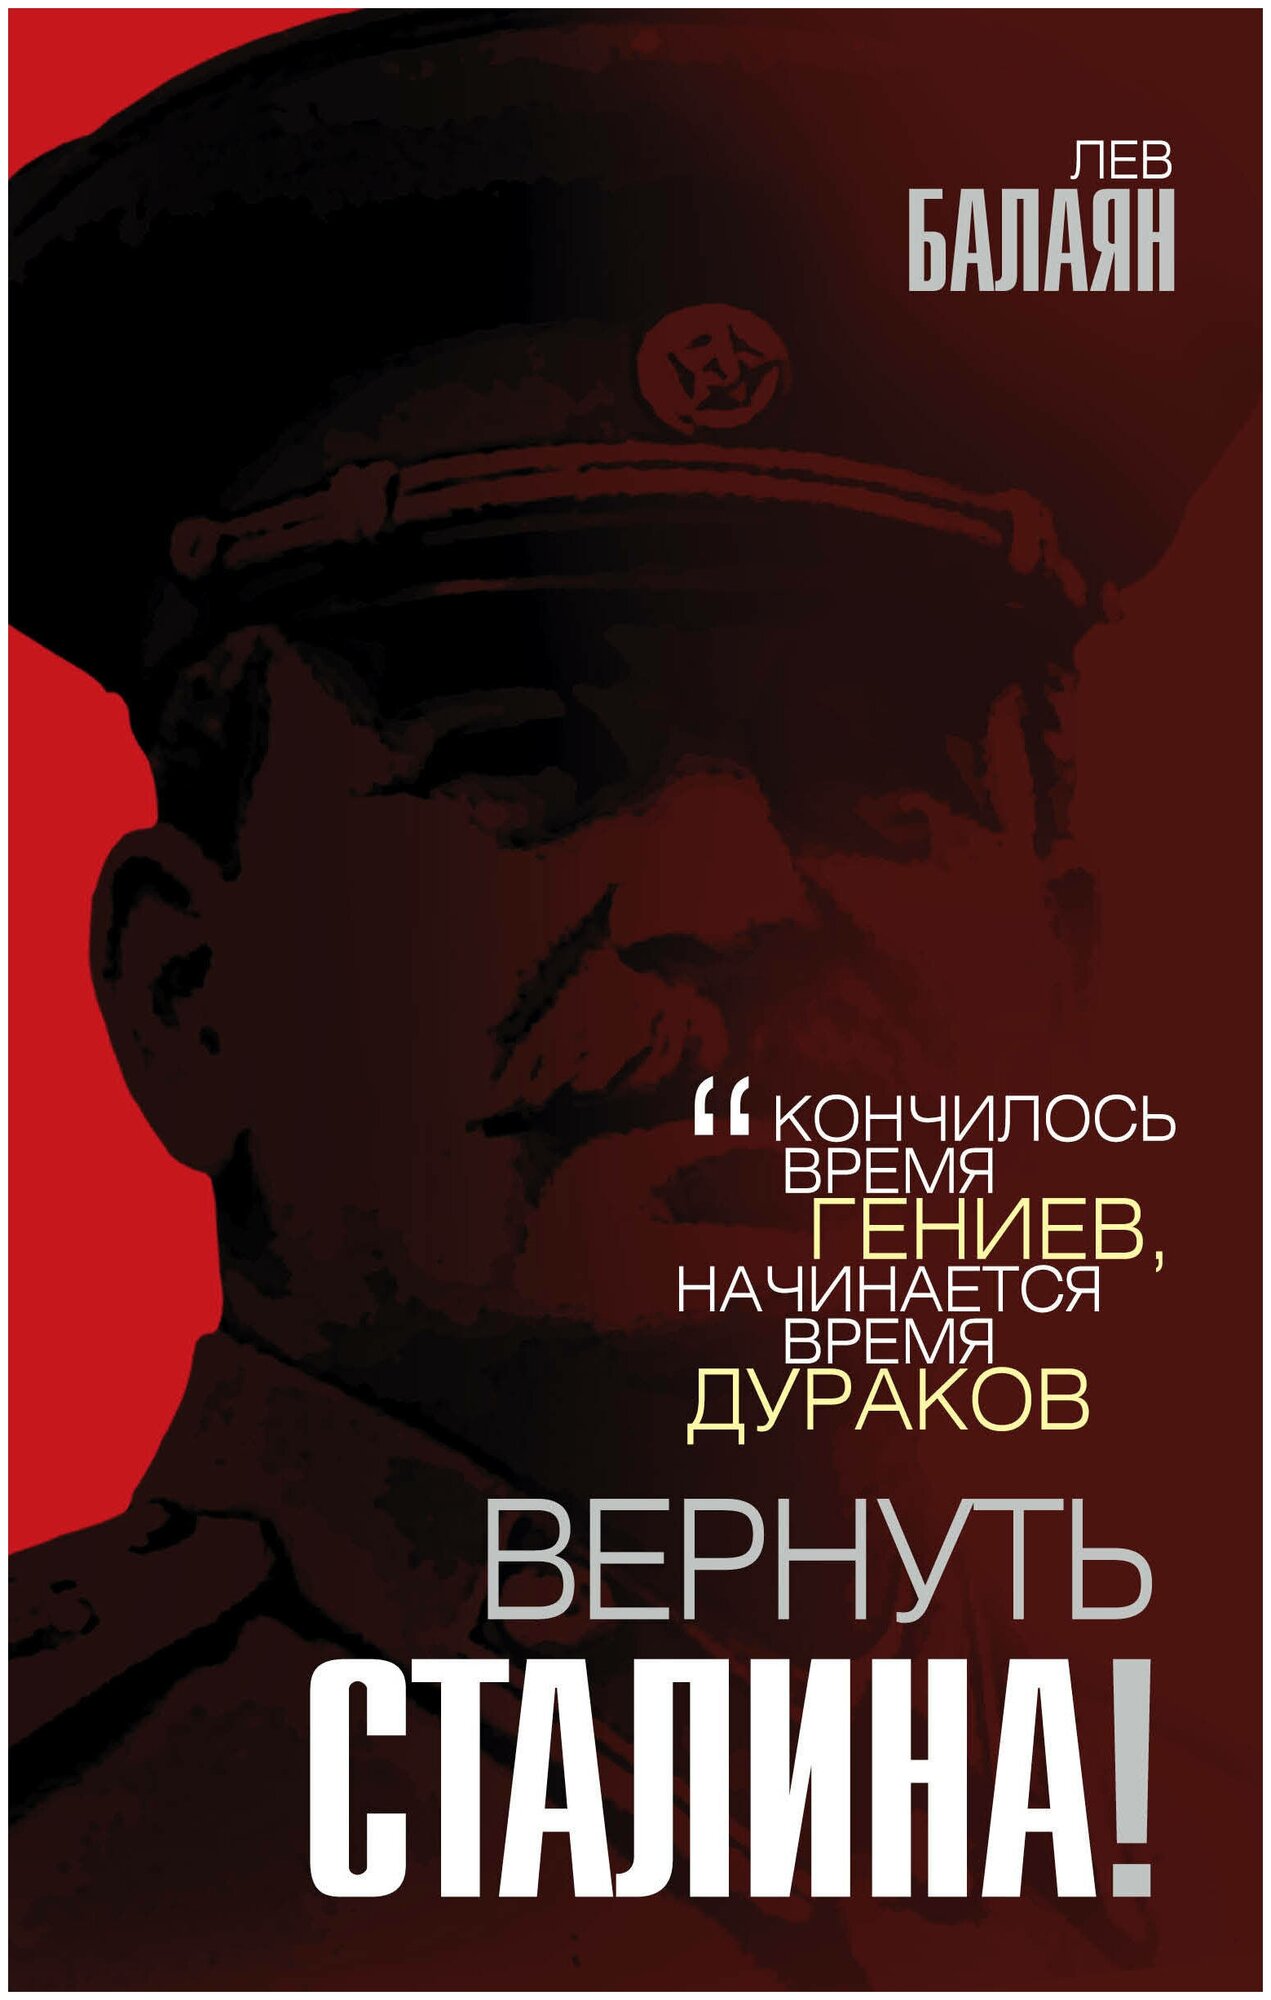 Вернуть Сталина! (Балаян Лев Ашотович) - фото №1